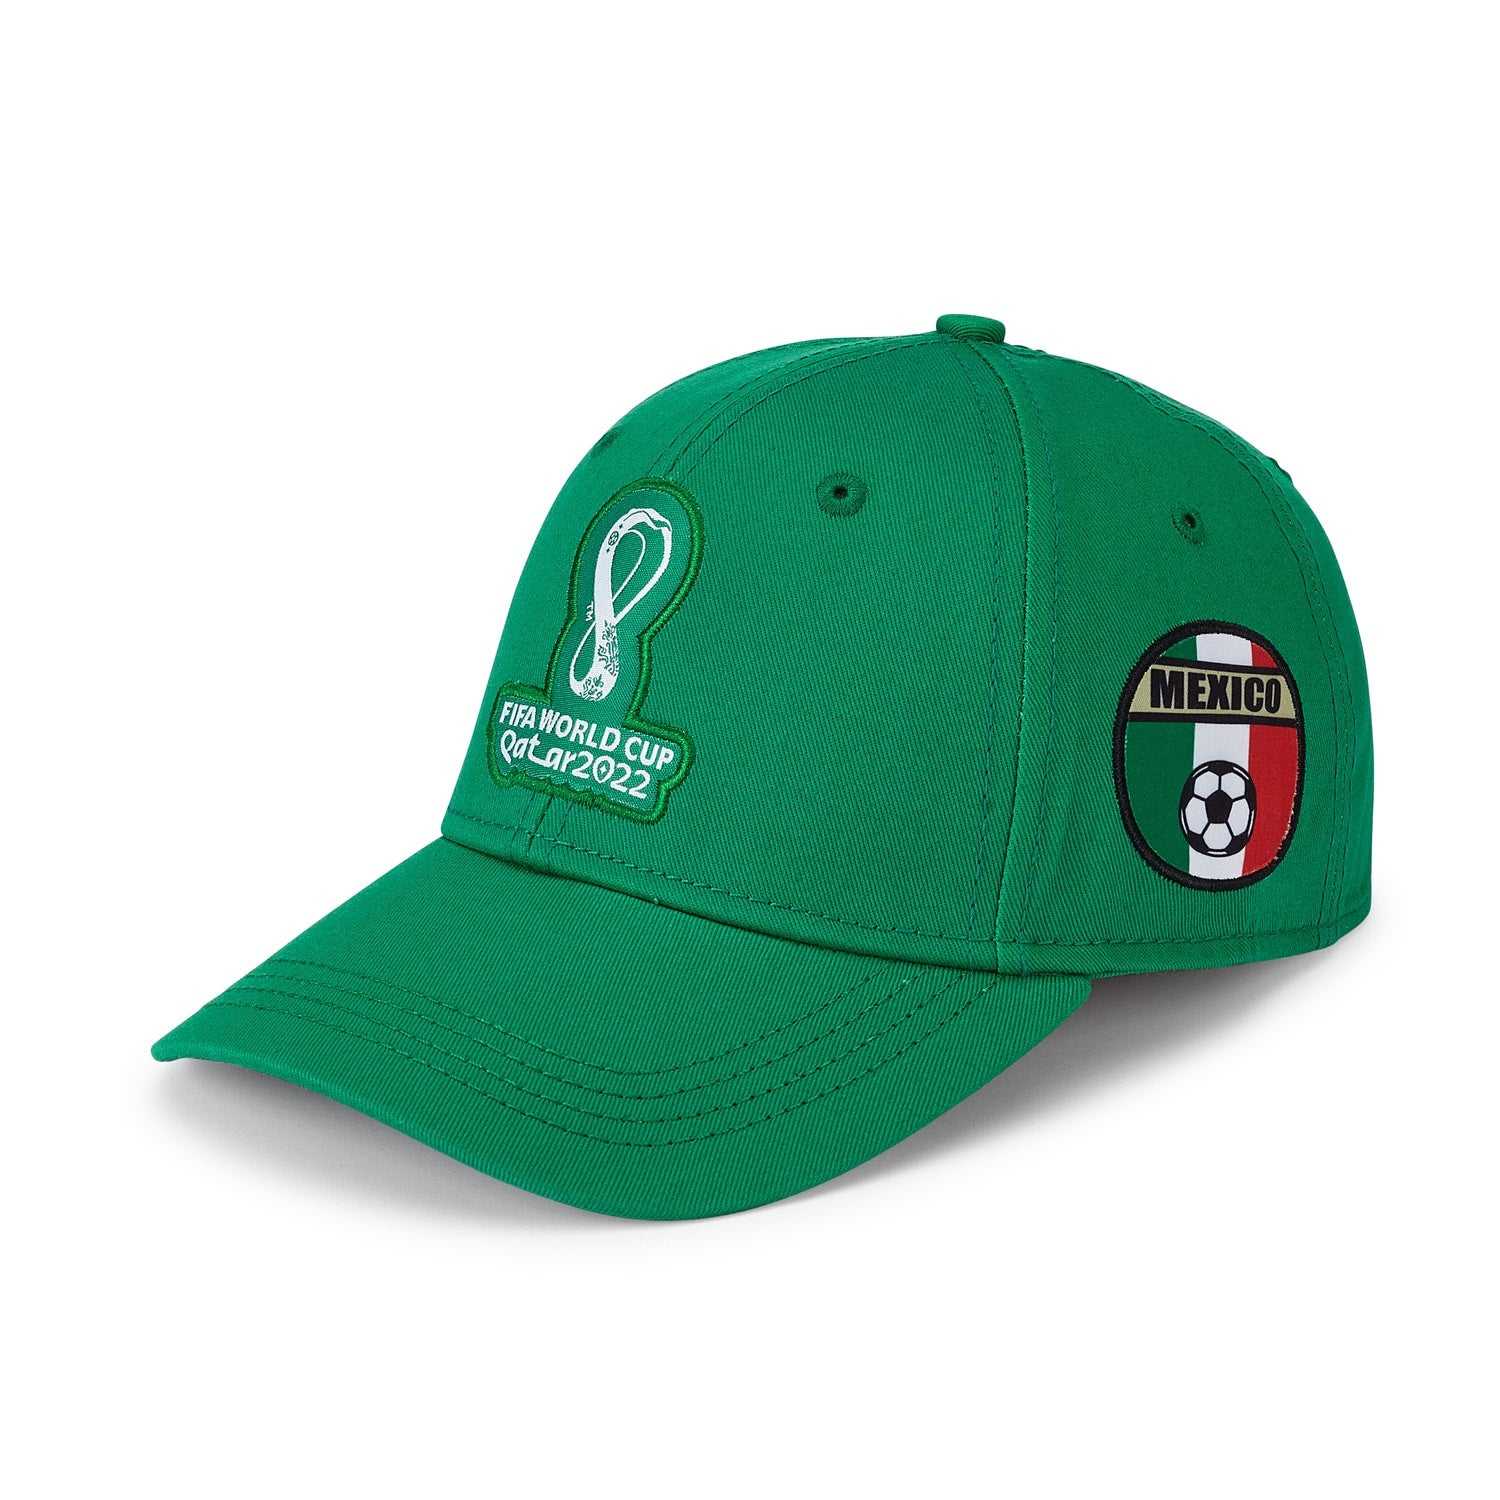 2022 World Cup Mexico Green Cap - Men's